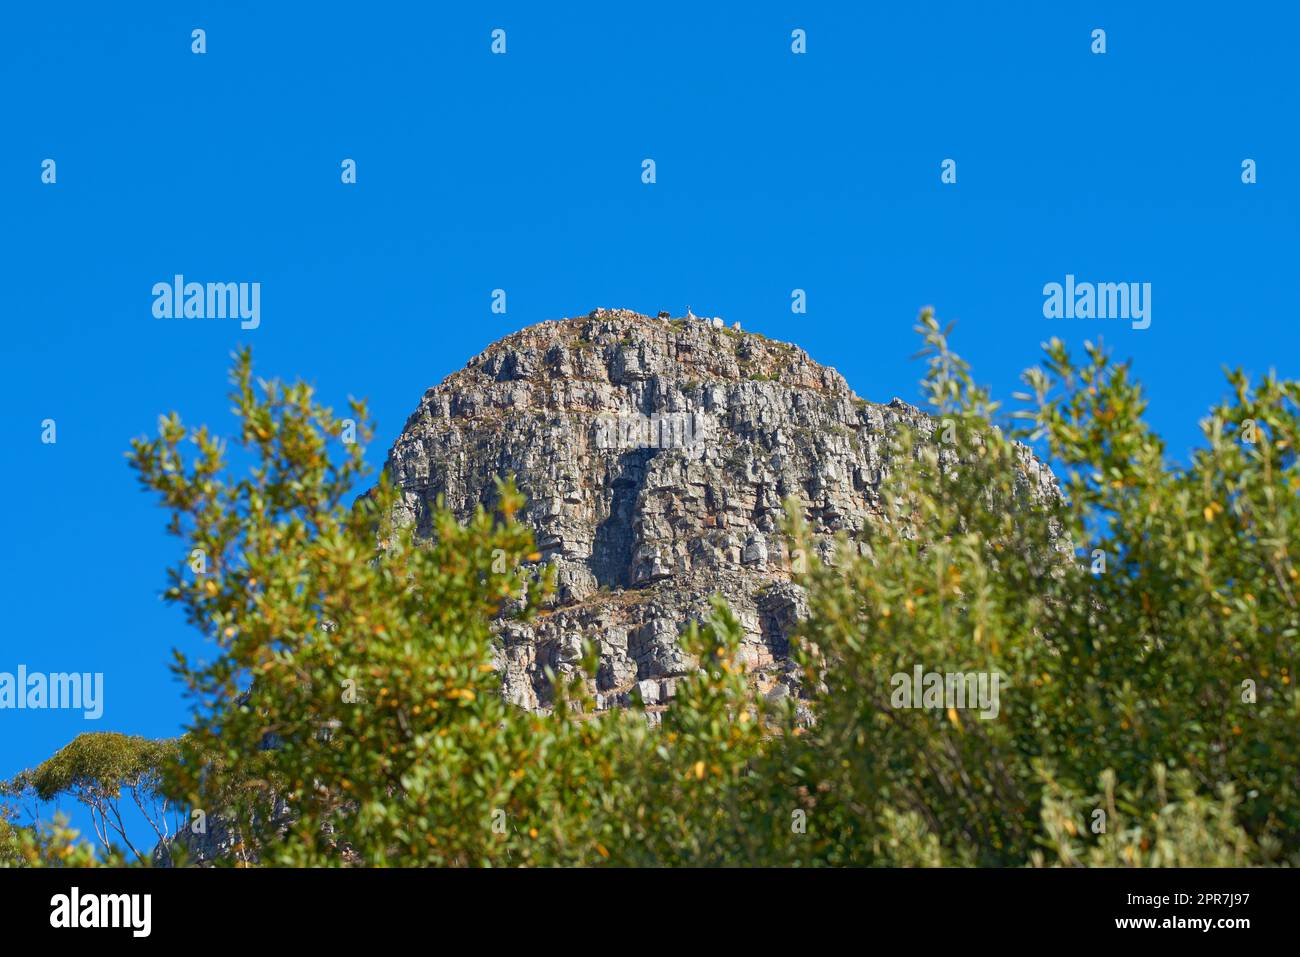 Landschaftsblick auf den Lions Head Mountain in einem beliebten Tourismus- oder Wanderziel. Unebenes Gelände mit blauem Himmel, Kopierraum und üppig grünen Bäumen oder Pflanzen, die im abgelegenen, wilden Kapstadt, Südafrika, wachsen Stockfoto